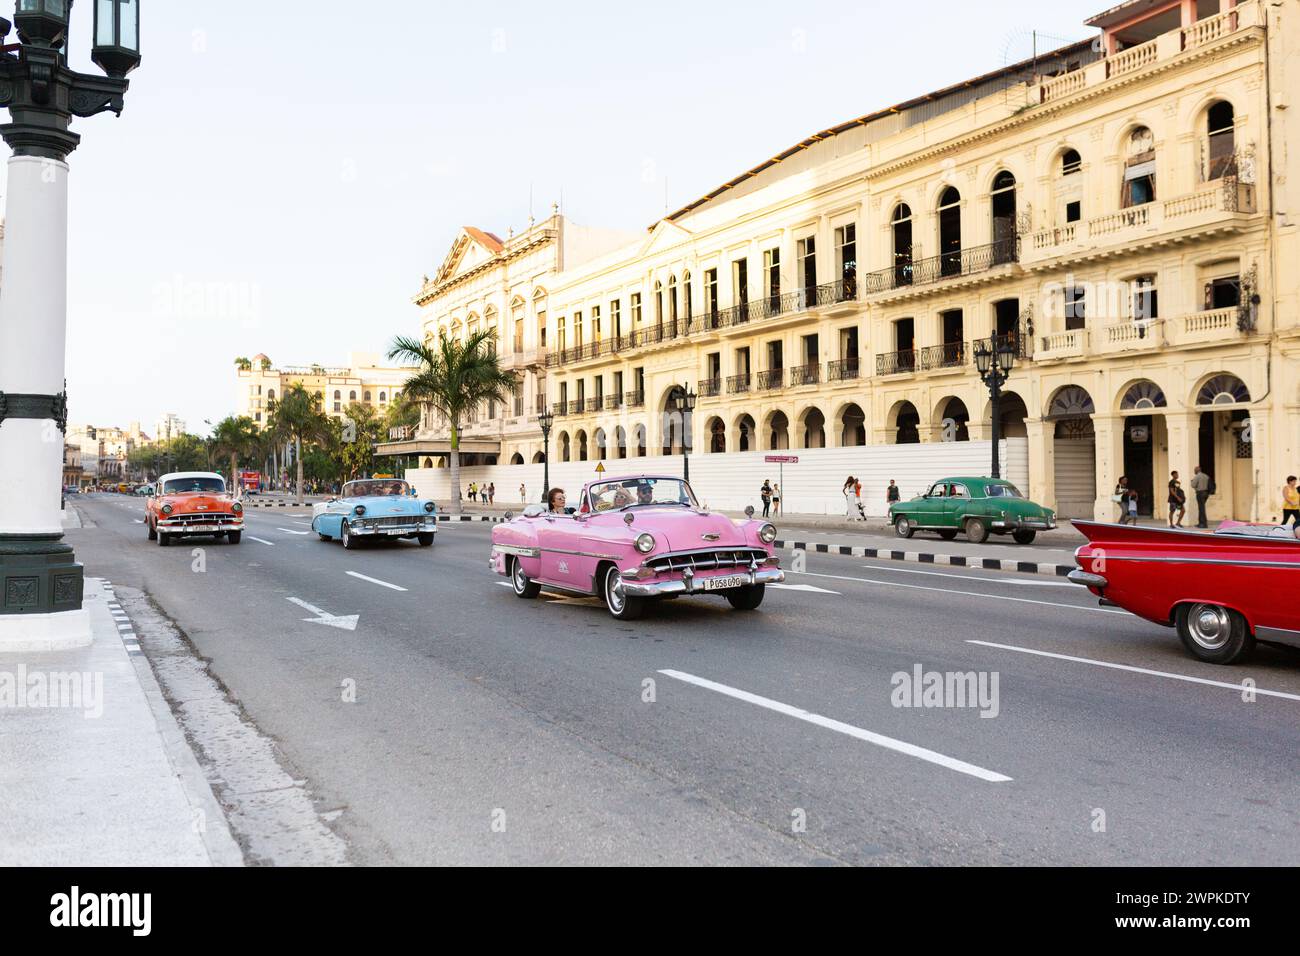 Parata di auto cubane: Auto rosse, blu, rosa e verdi all'Avana Foto Stock